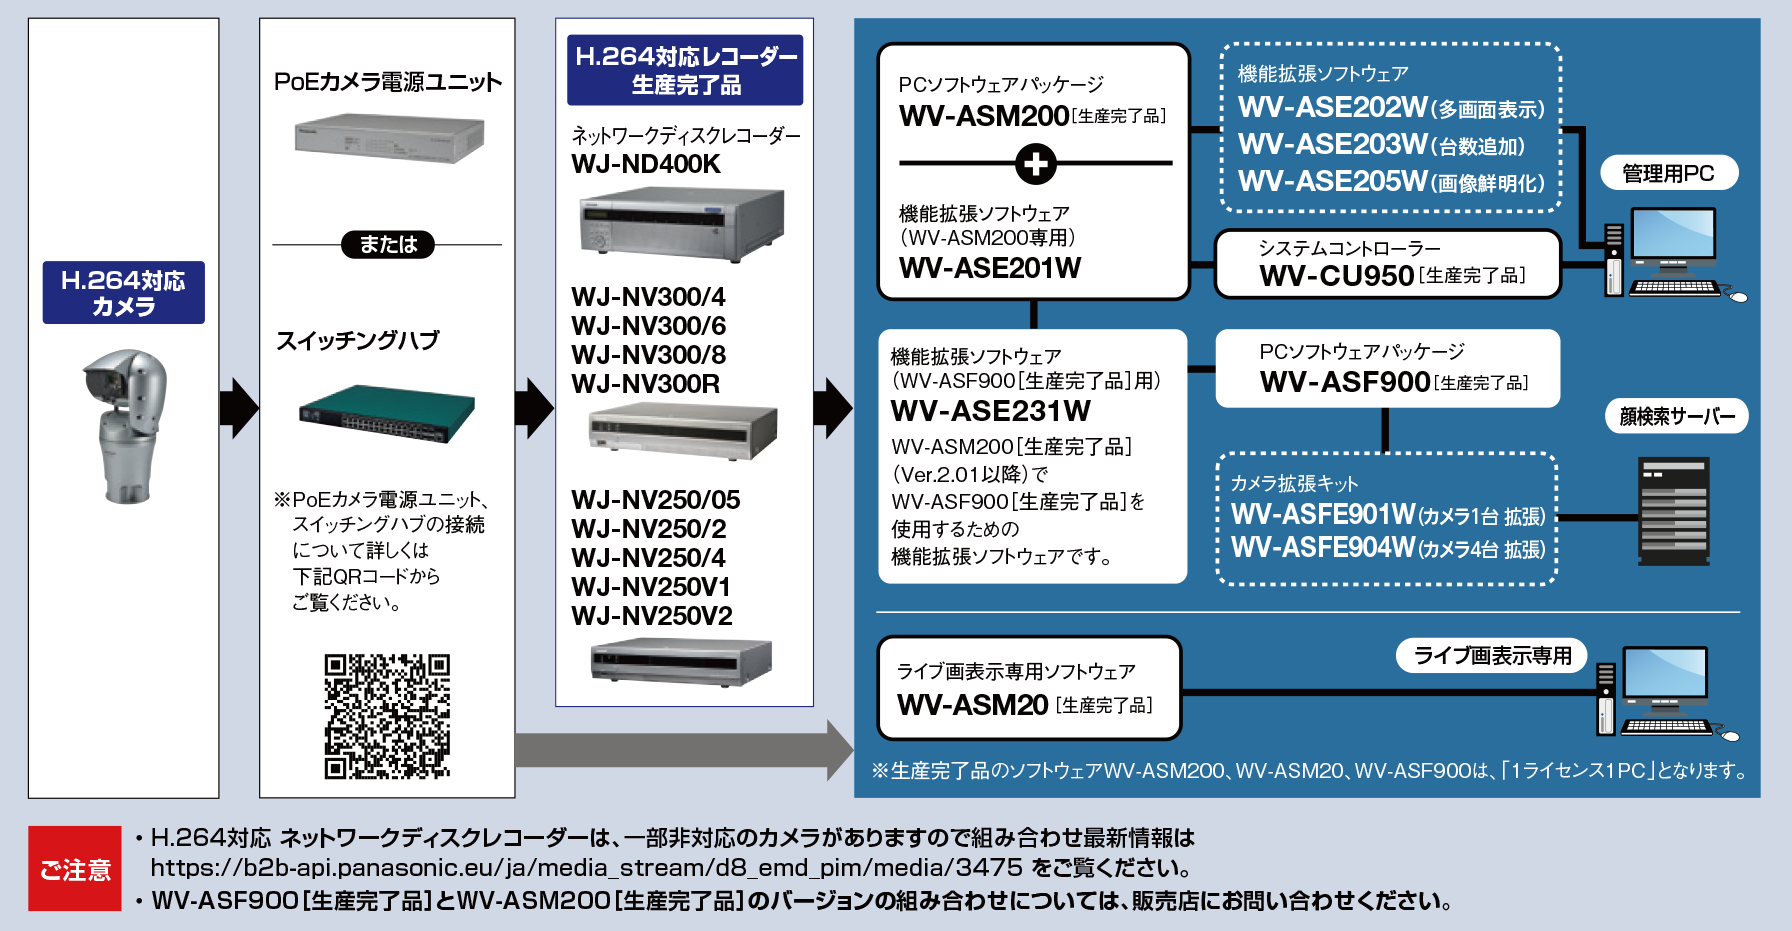 WV-ASM200 システム構成図